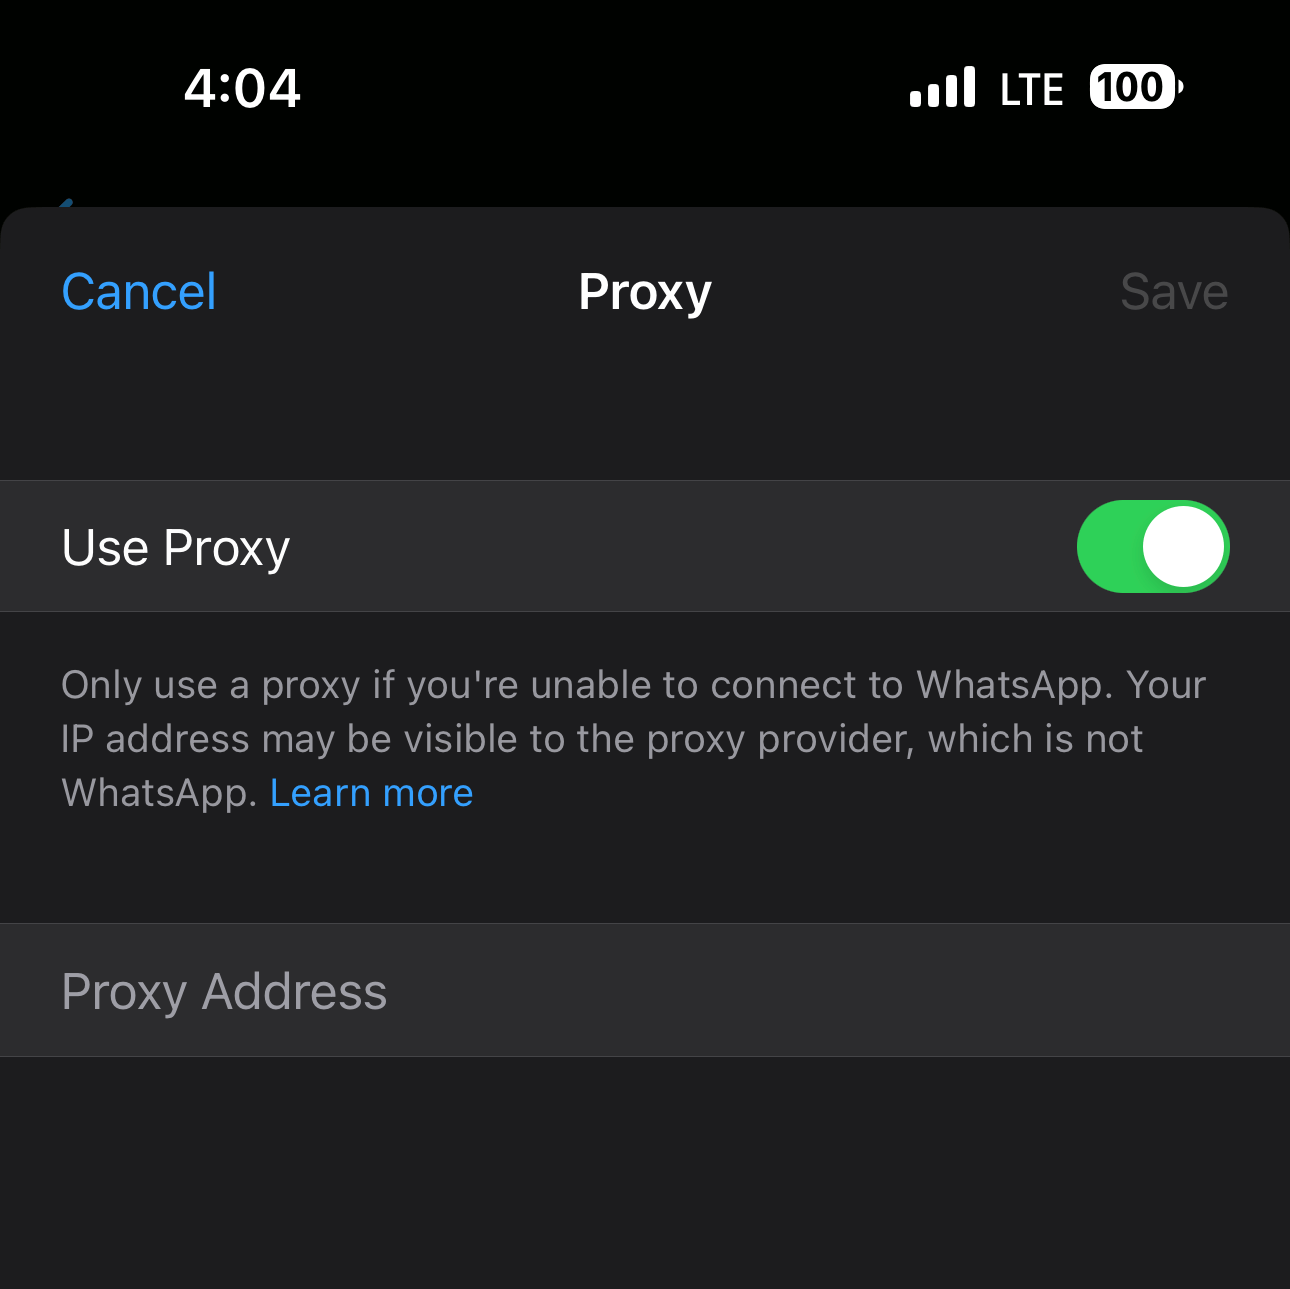 Enable Use Proxy